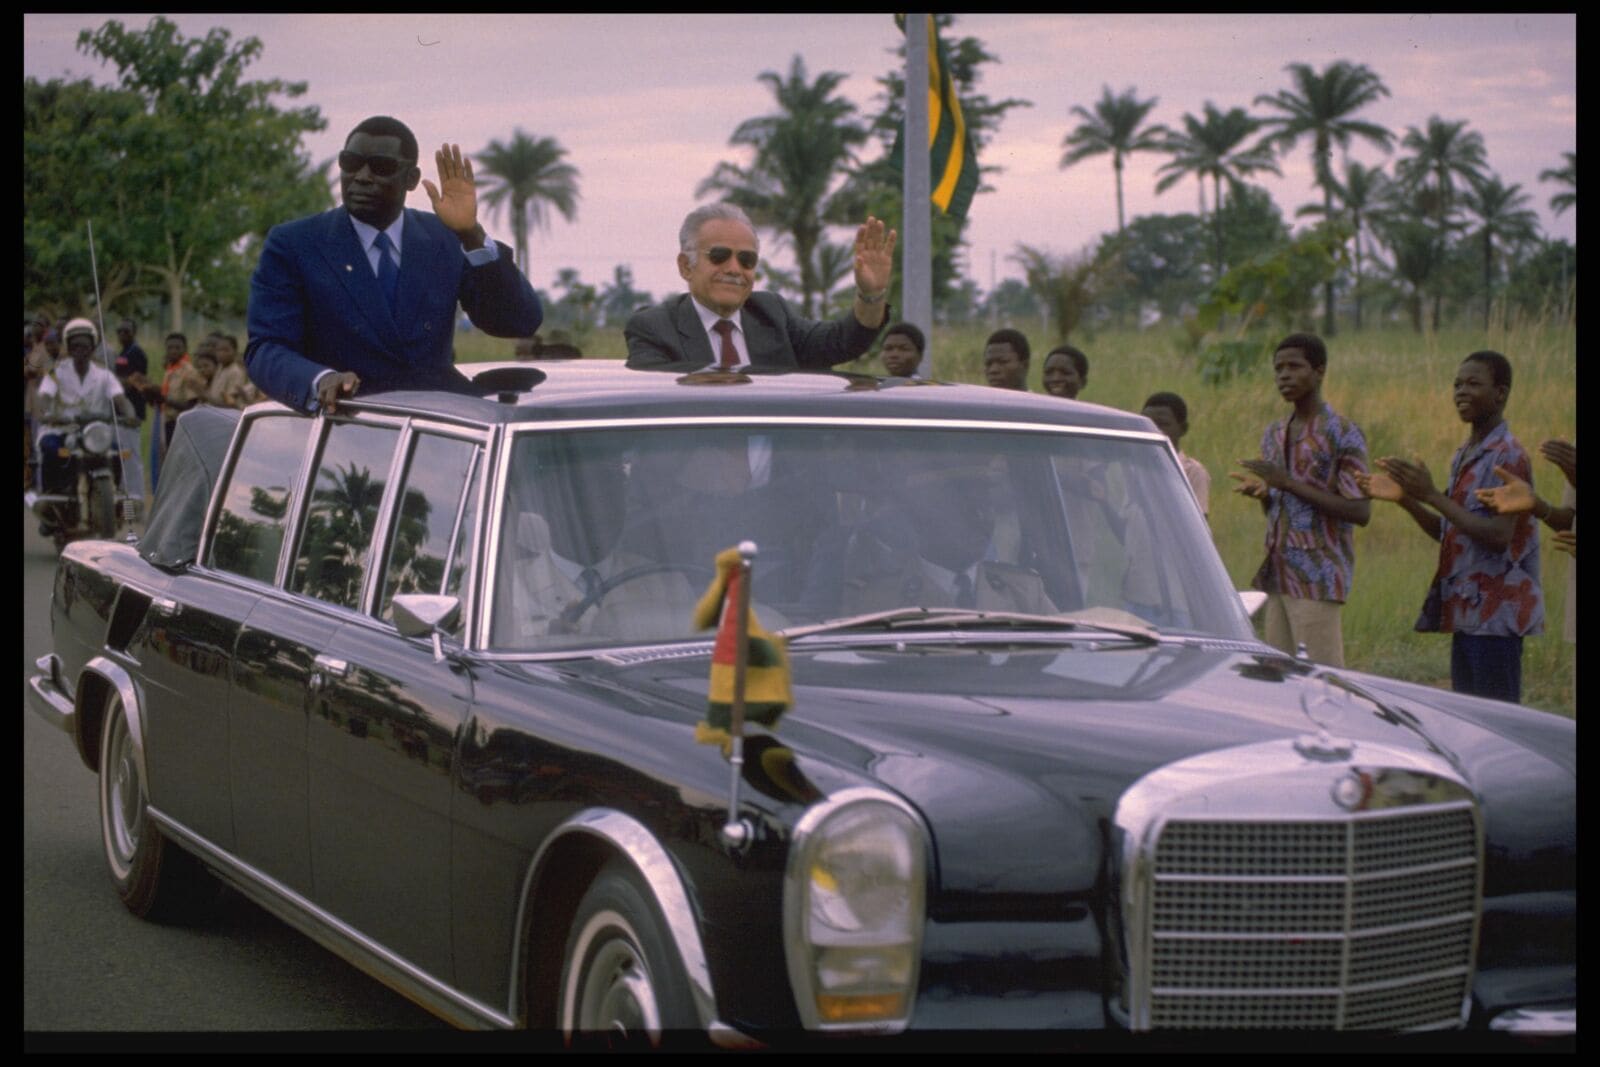 רה"מ יצחק שמיר עם נשיא טוגו איידמה גנסינגבה, בעת ביקור ממלכתי בבירה לומה, 14.6.1987 (צילום: נתי הרניק, לע"מ)